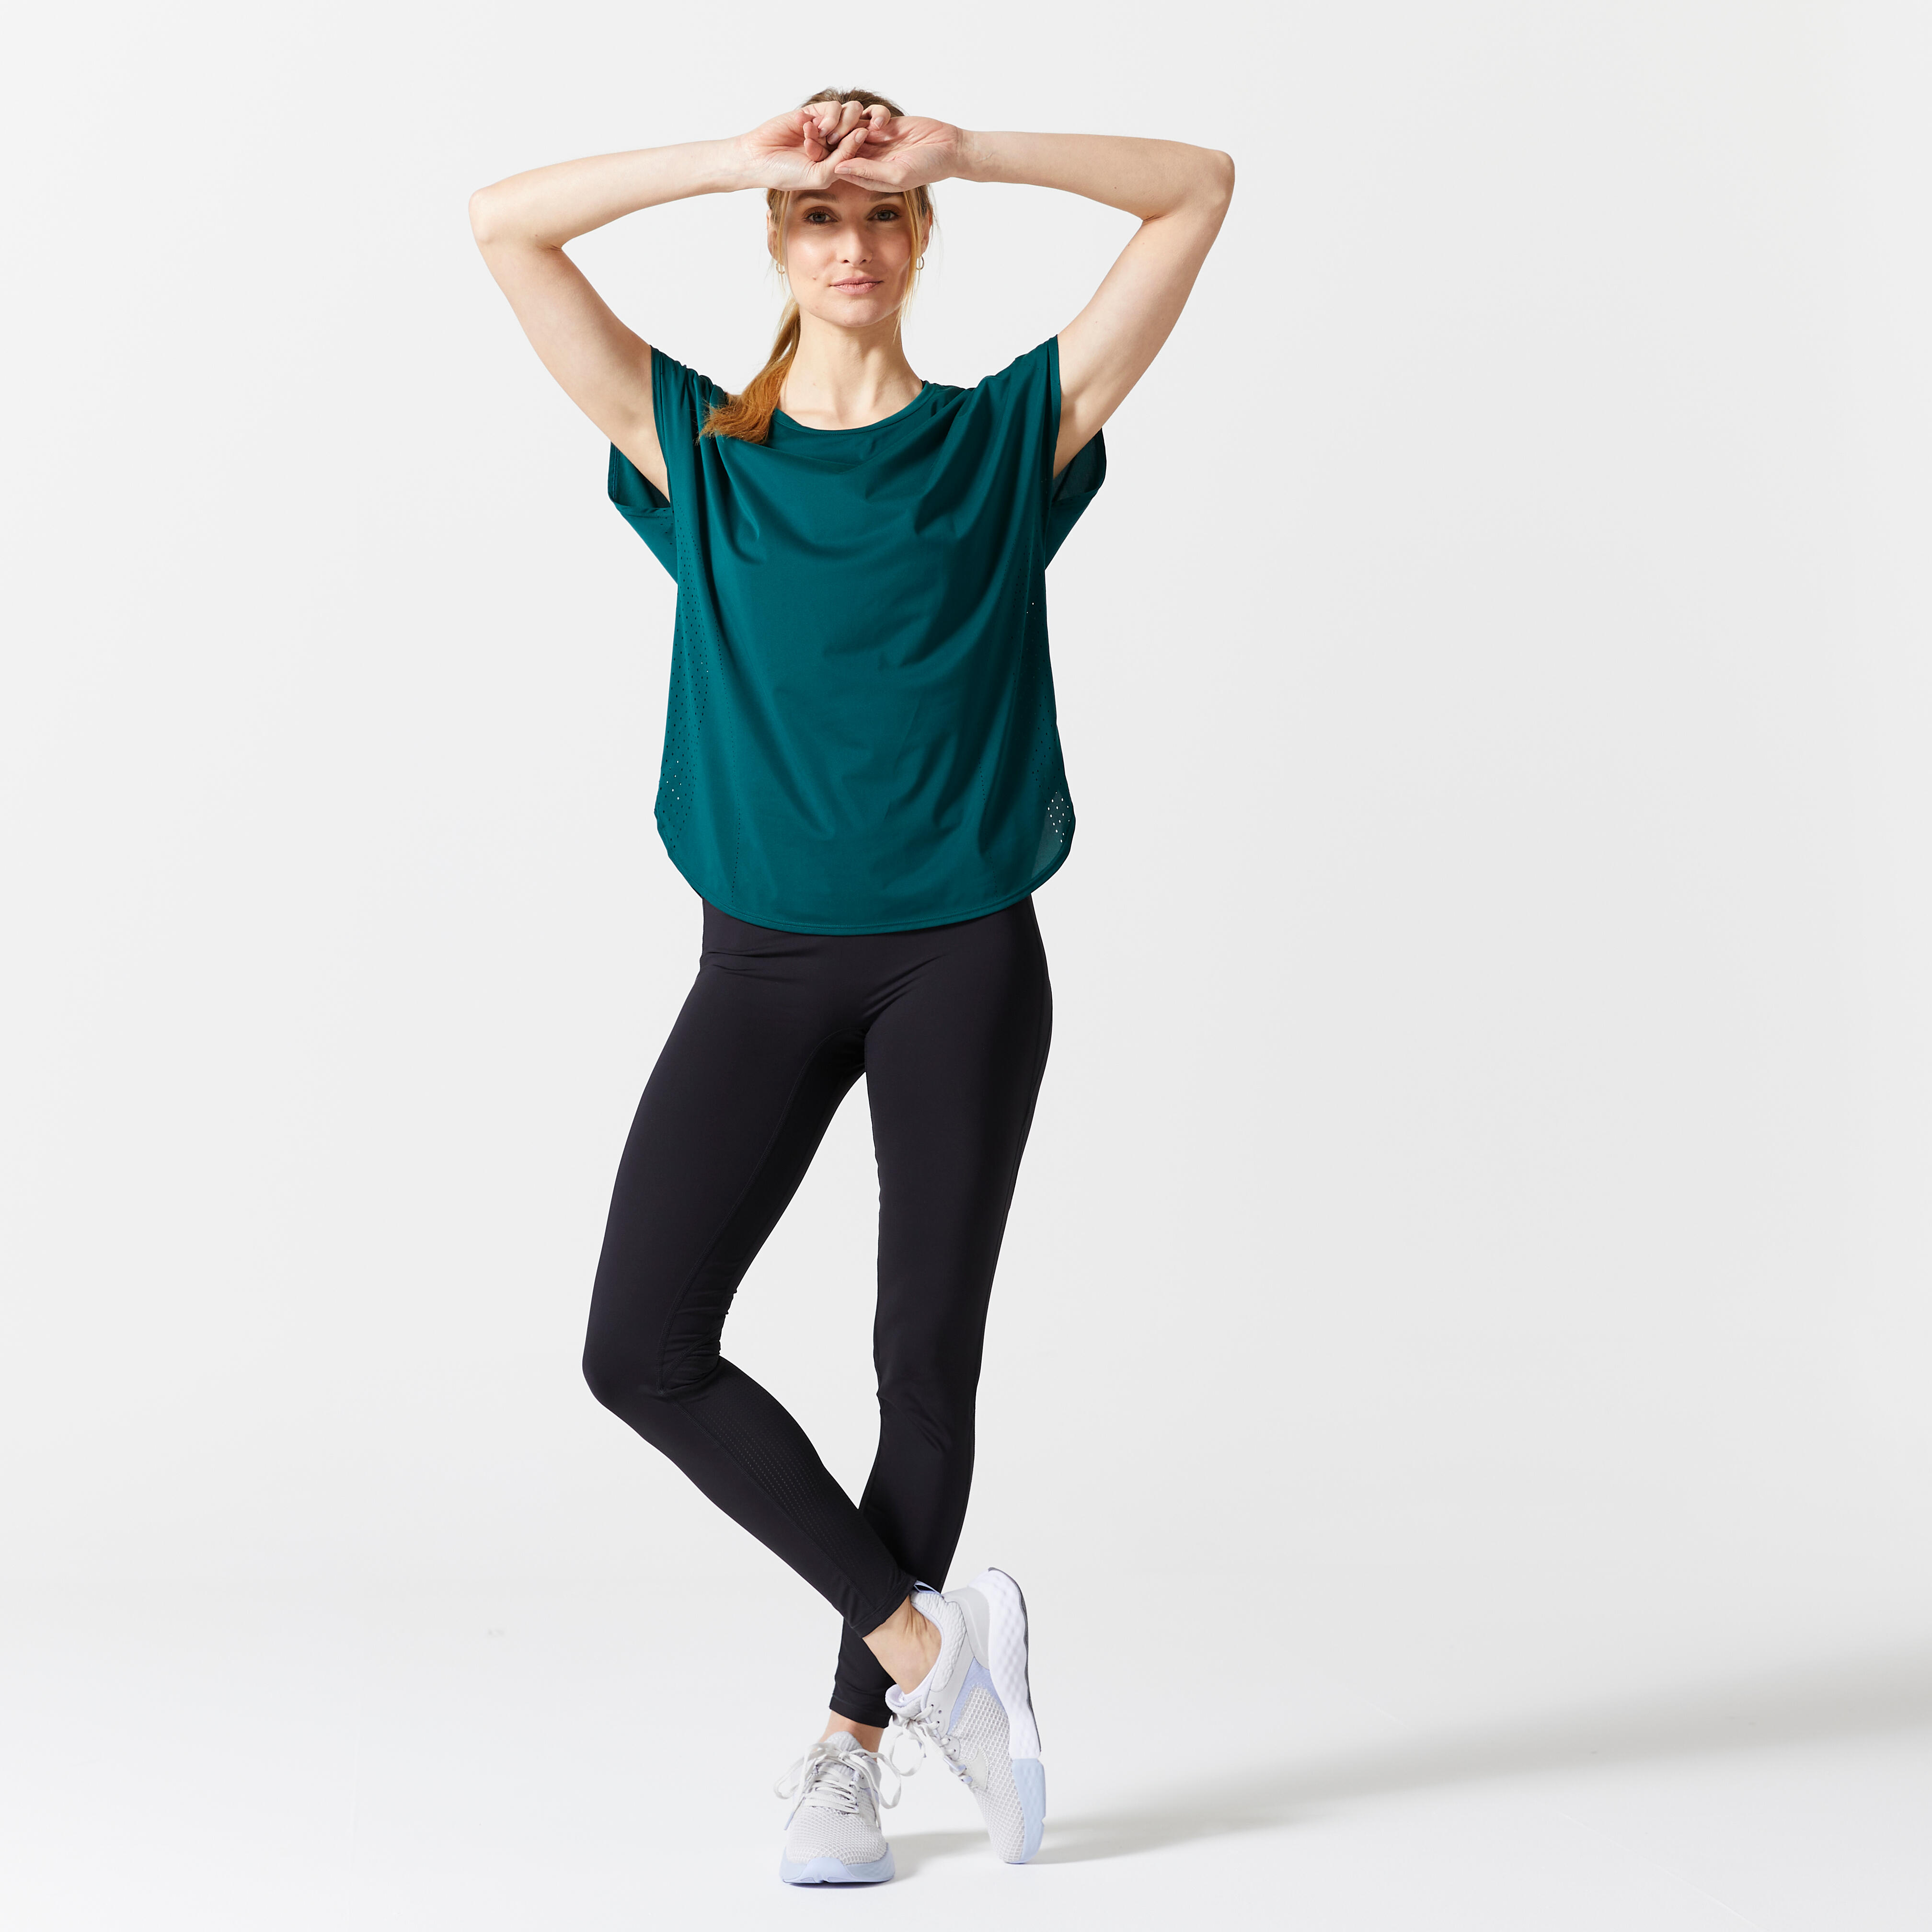 T-shirt sport femme – MH 500 vert